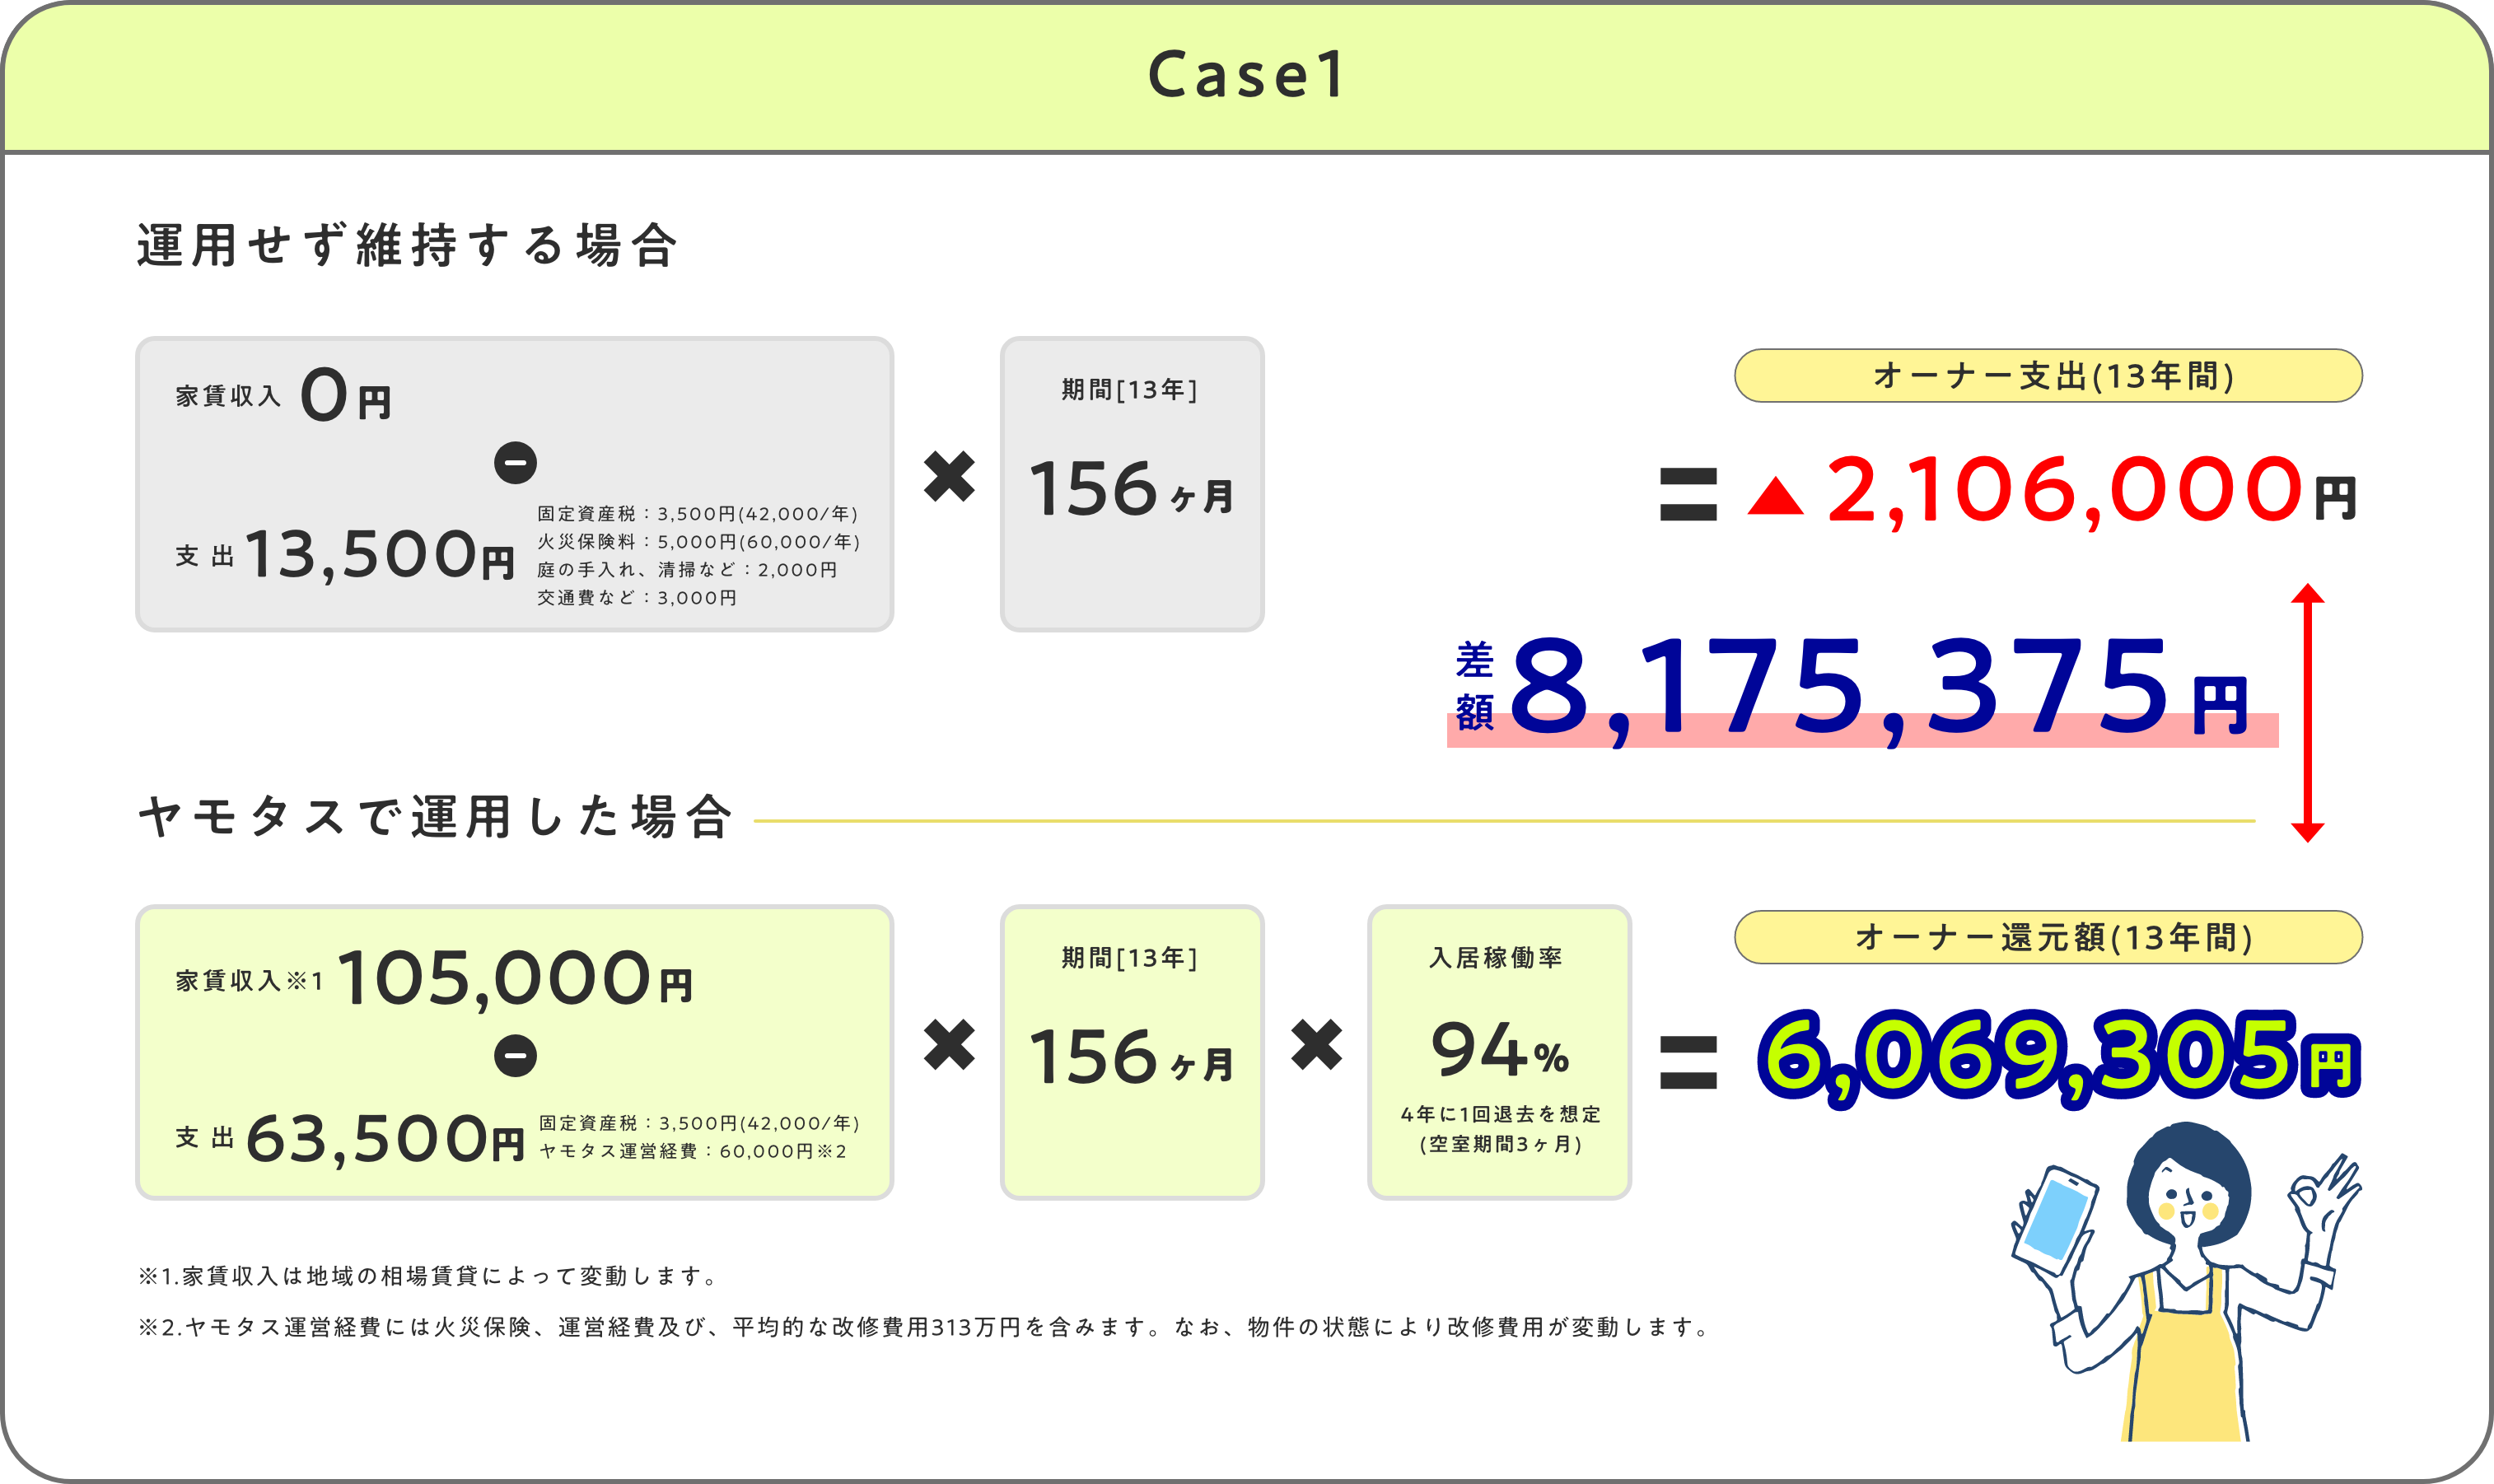 ヤモタスの収支モデル case01